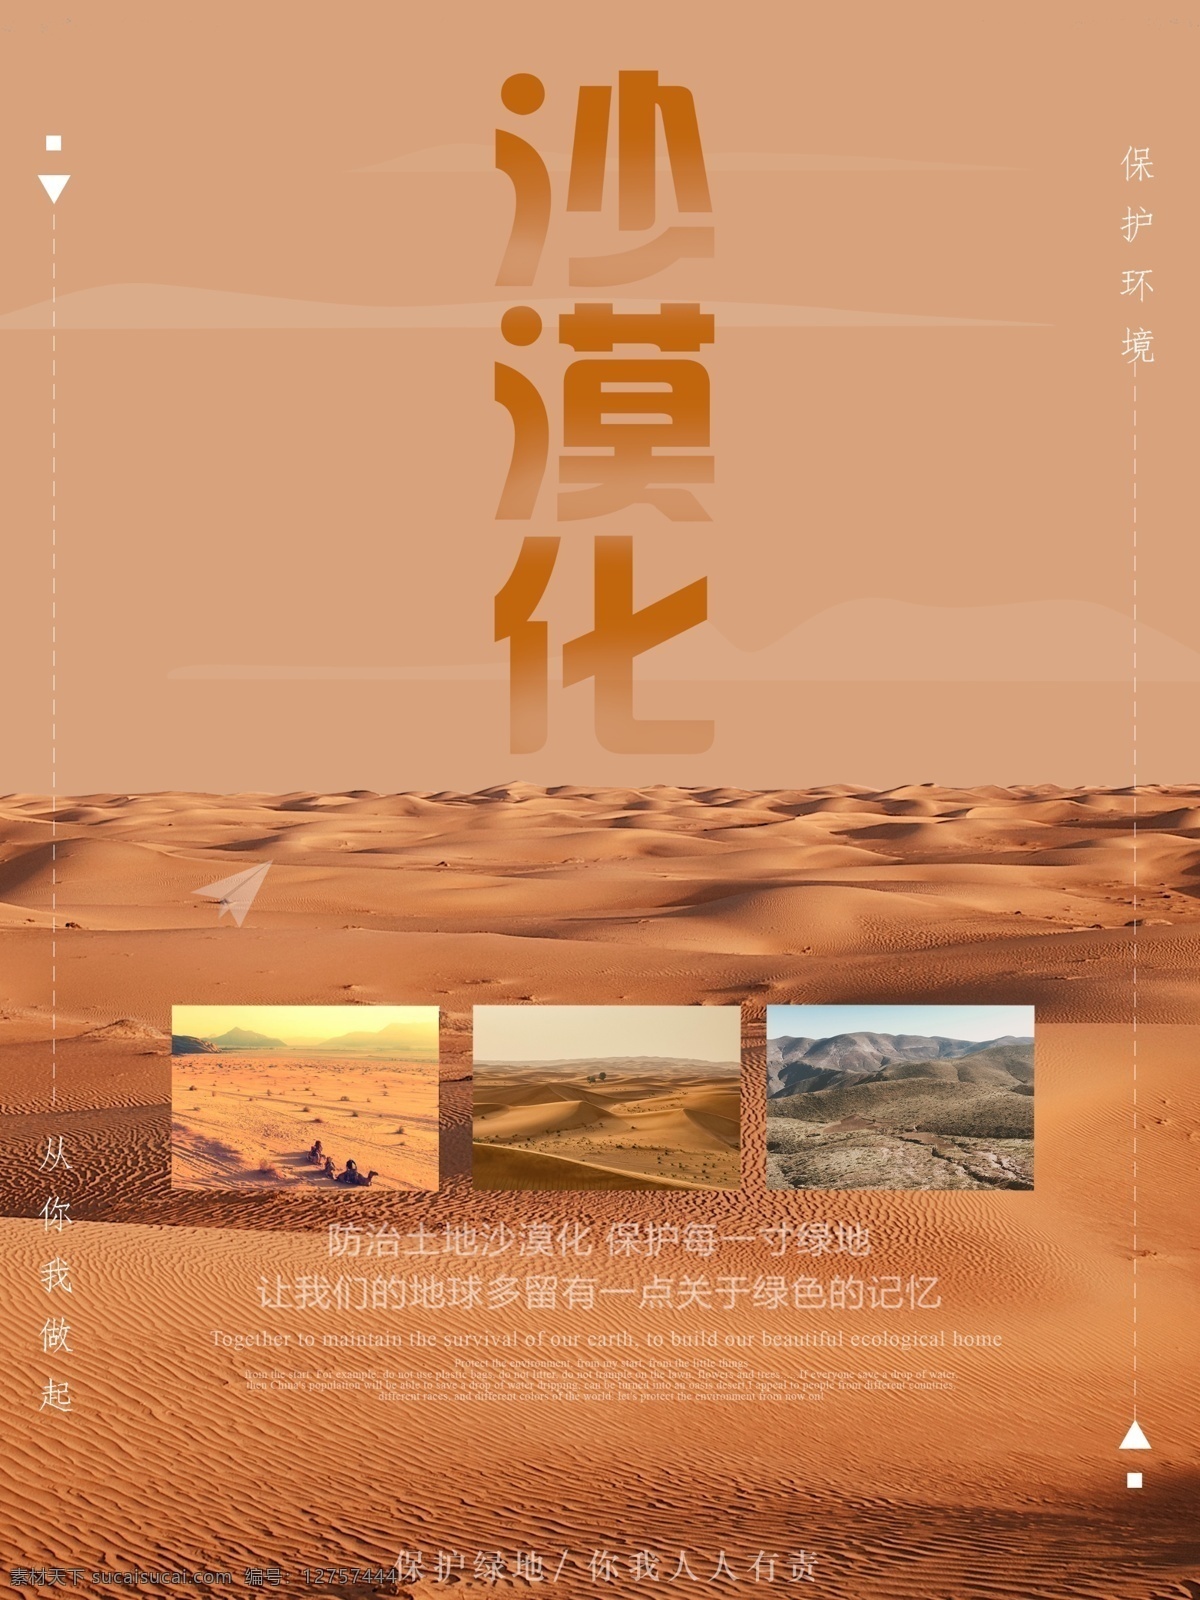 简约 大气 防止 沙漠化 海报 沙漠 保护环境